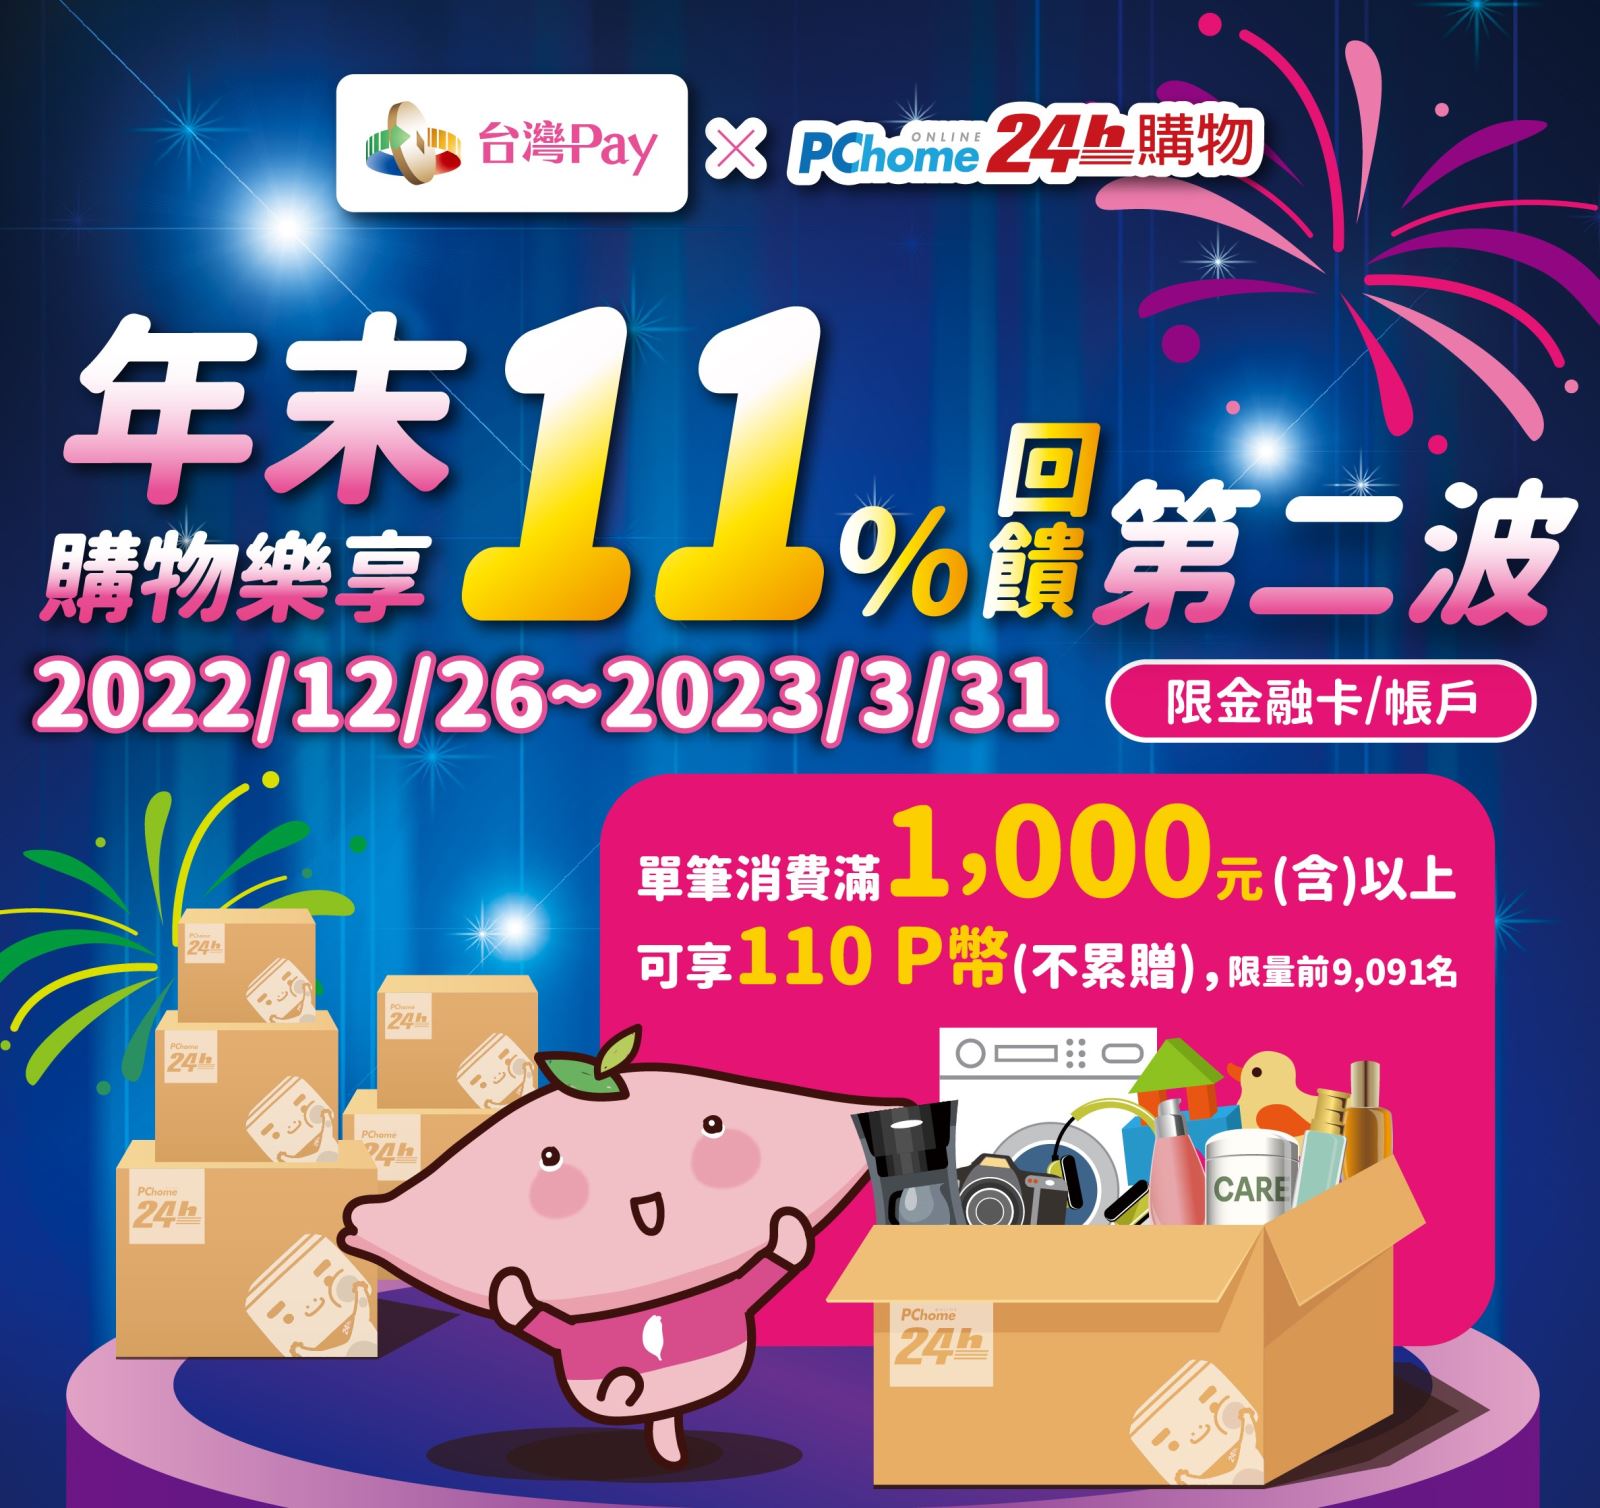 活動期間內用戶於PChome24h購物網站或PChome24h購物APP，使用「台灣Pay」單筆消費滿新臺幣1,000元(含)以上可享回饋110 PChome P幣